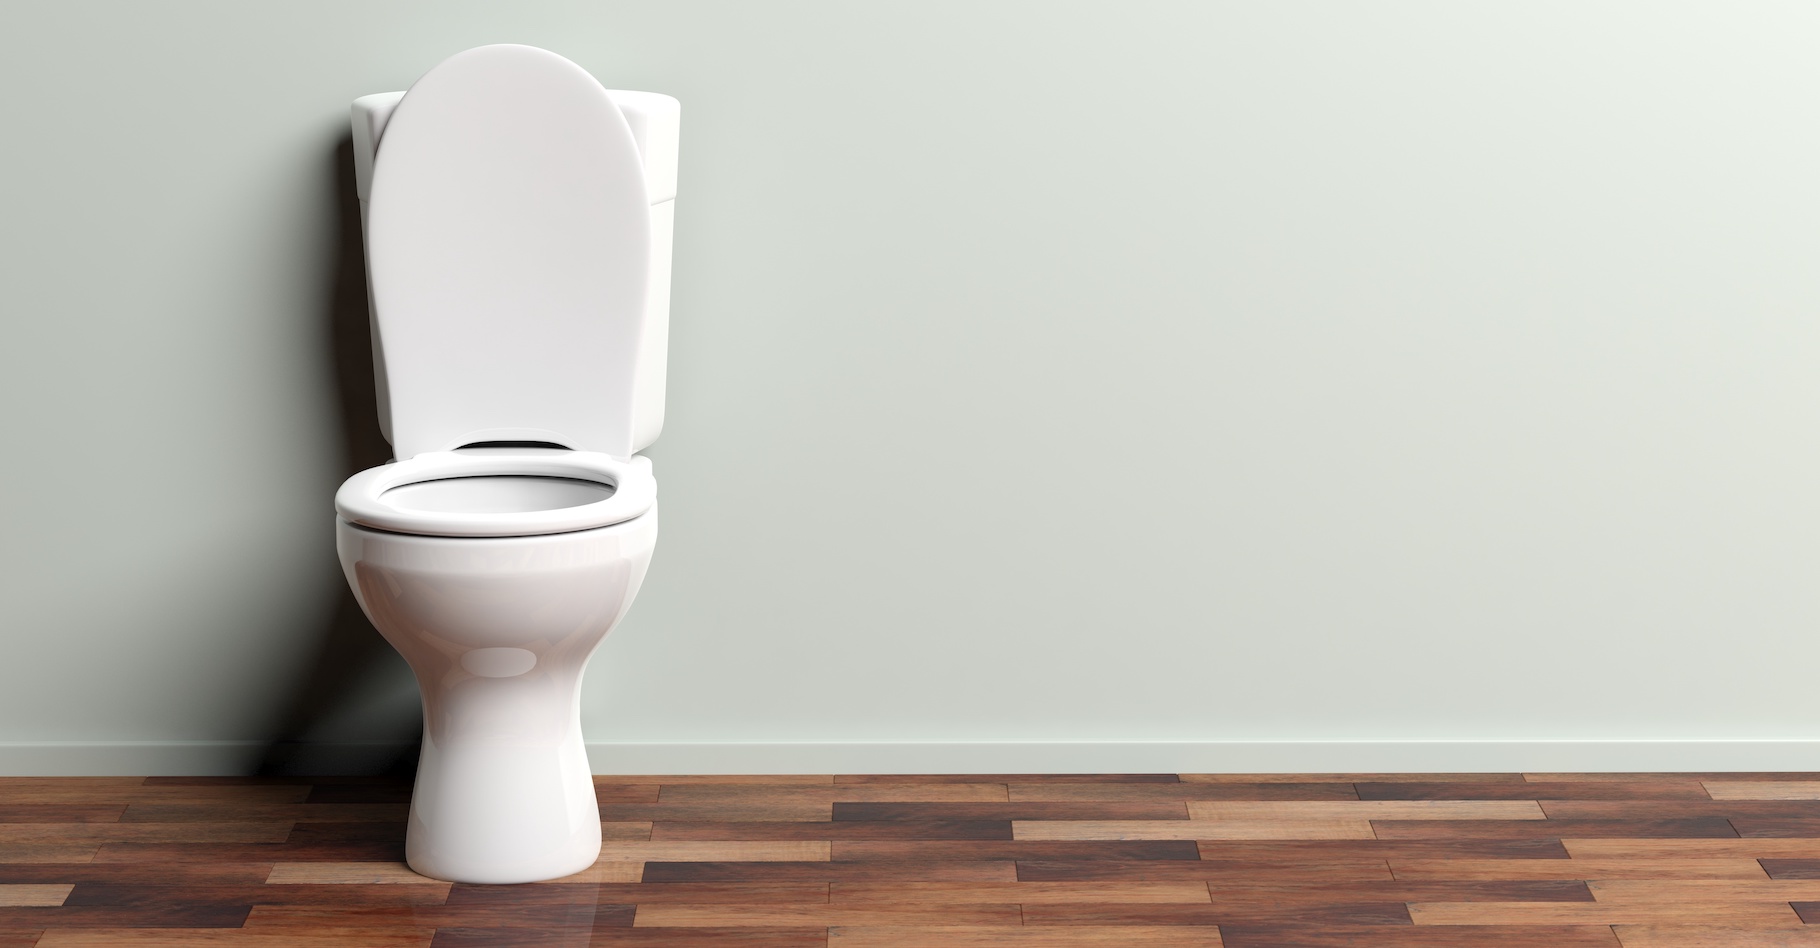 Des chercheurs travaillent au développement de toilettes intelligentes capables de surveiller notre santé en analysant nos urines. © Rawf8, Adobe Stock